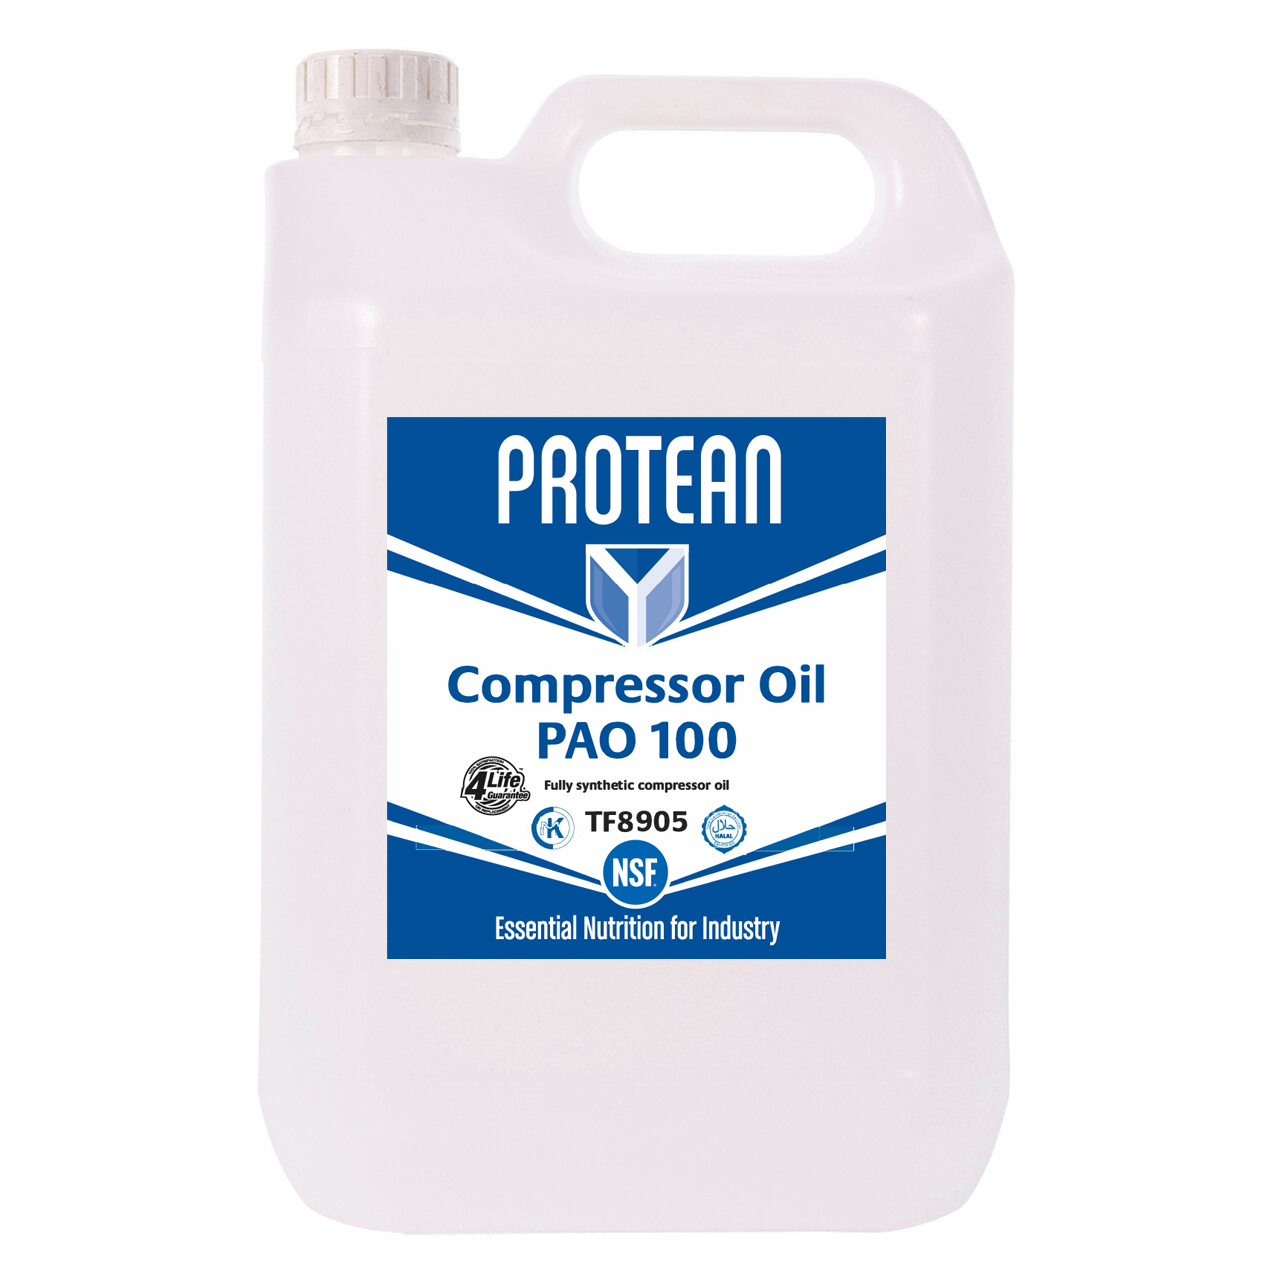 PROTEAN Compressor Oil PAO 100 5L - TF8905 - Box of 4